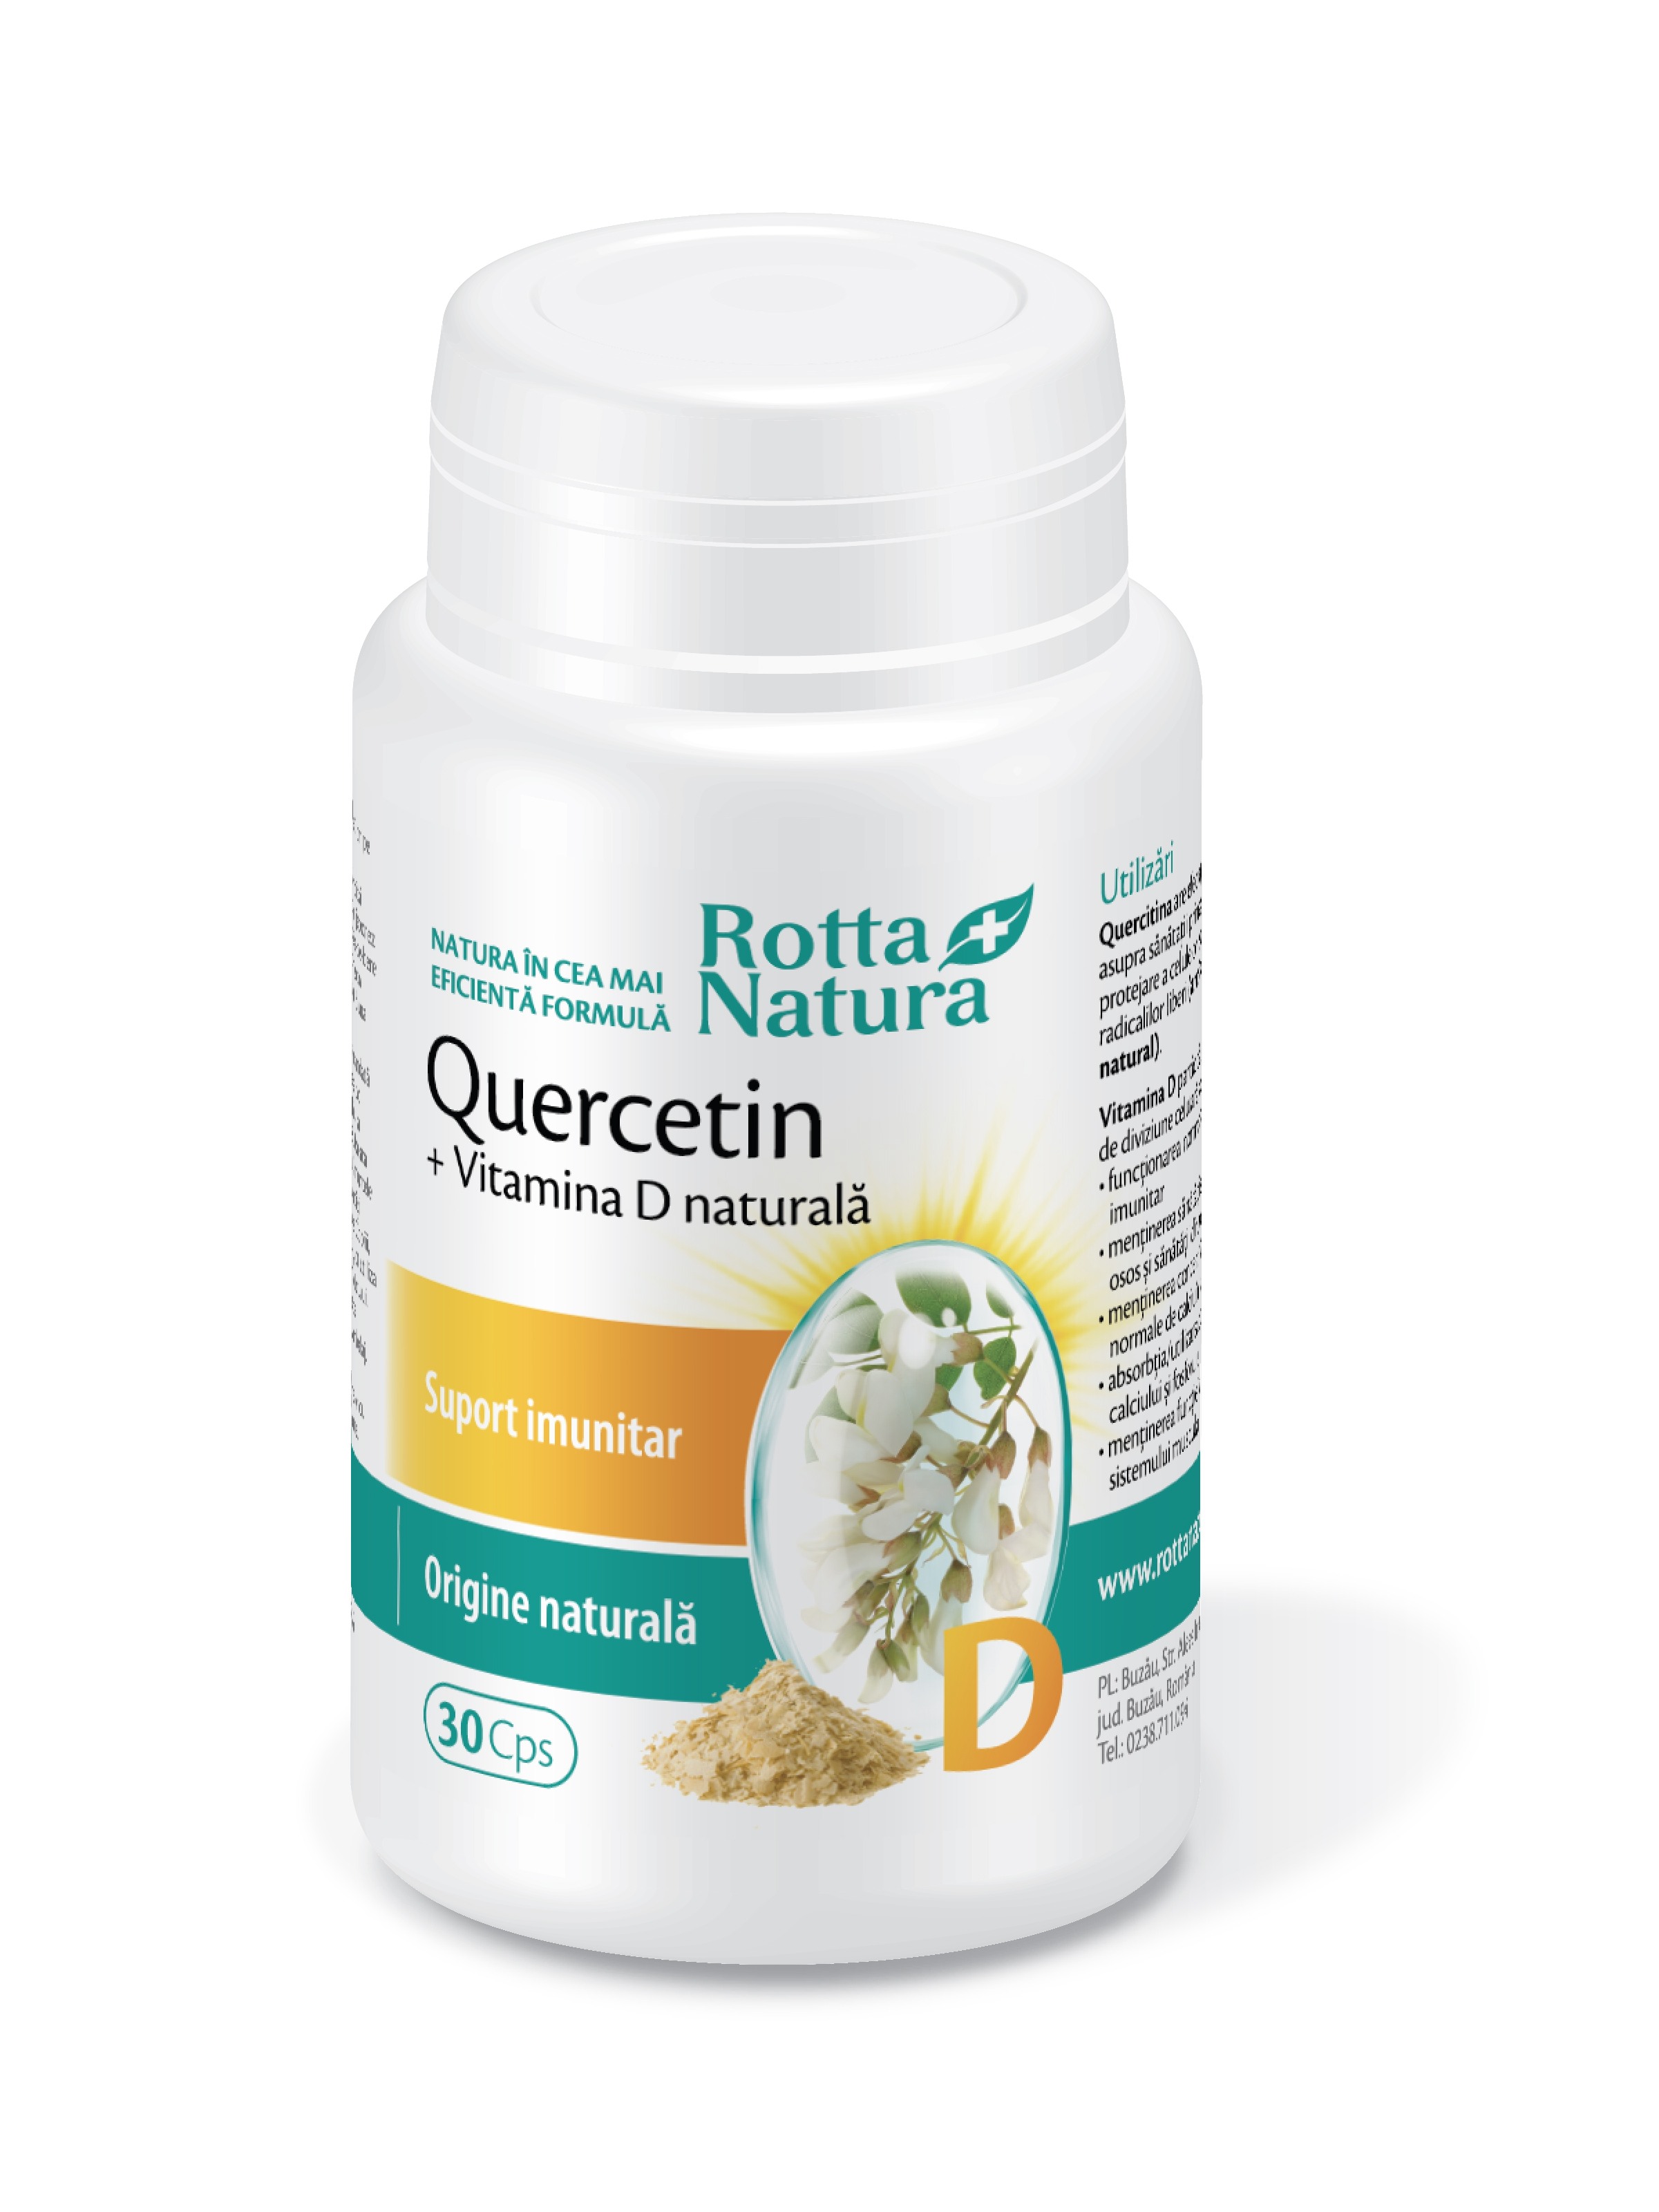 Imunitate - Quercetin + Vitamina D naturală 30 capsule, Rotta Natura, sinapis.ro